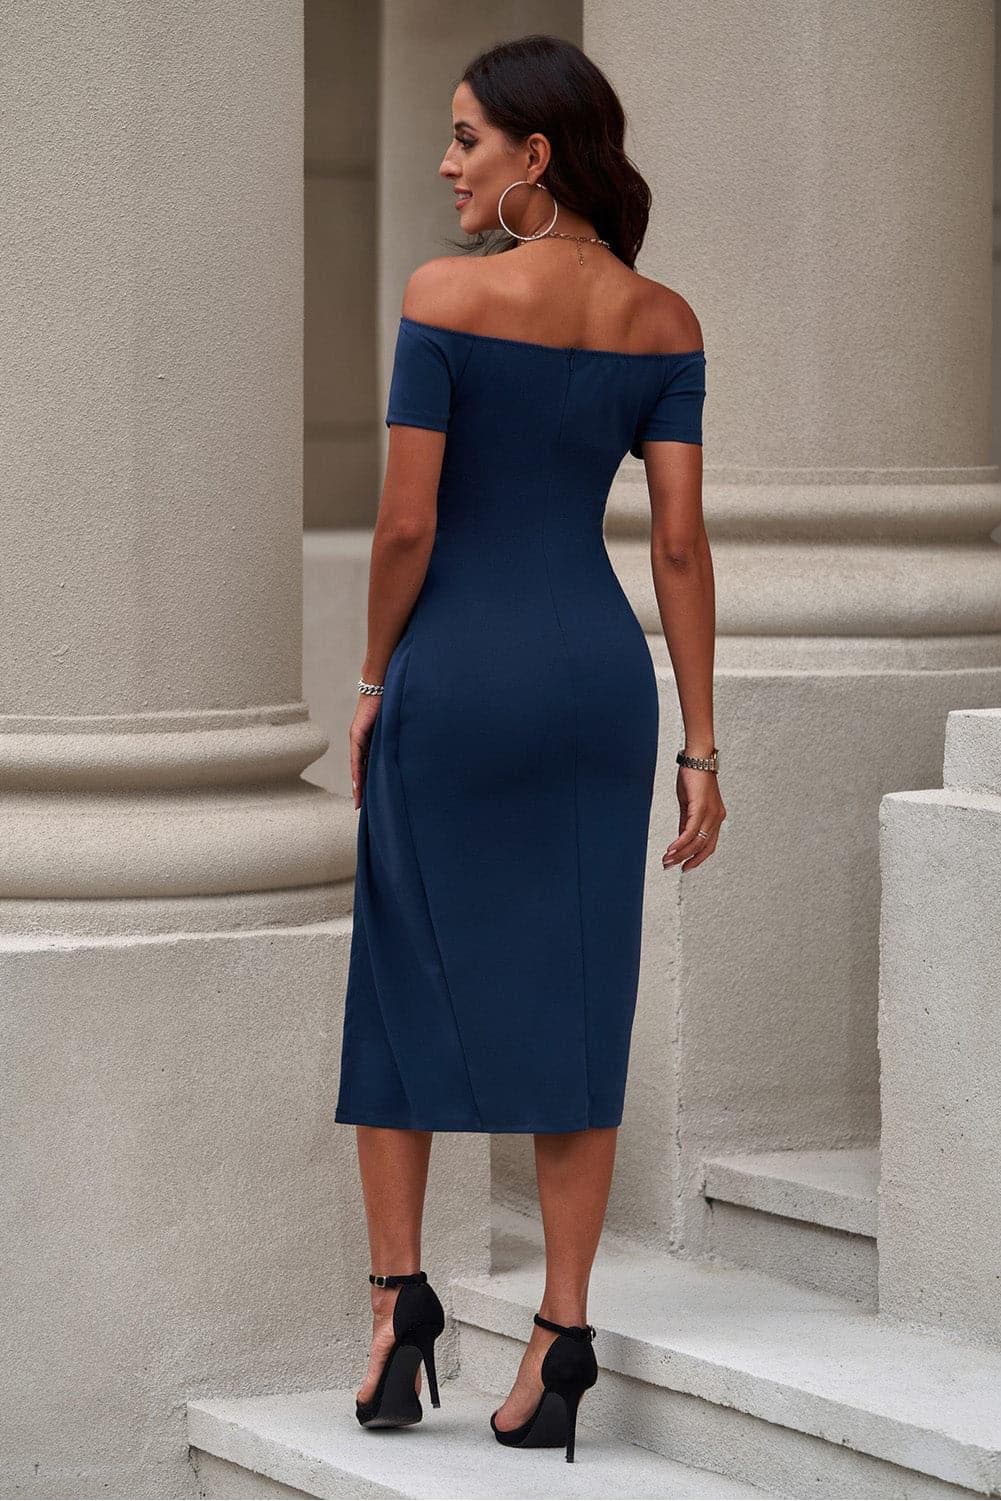 Off-Shoulder Short Sleeve Side Slit Dress - SwagglyLife Home & Fashion